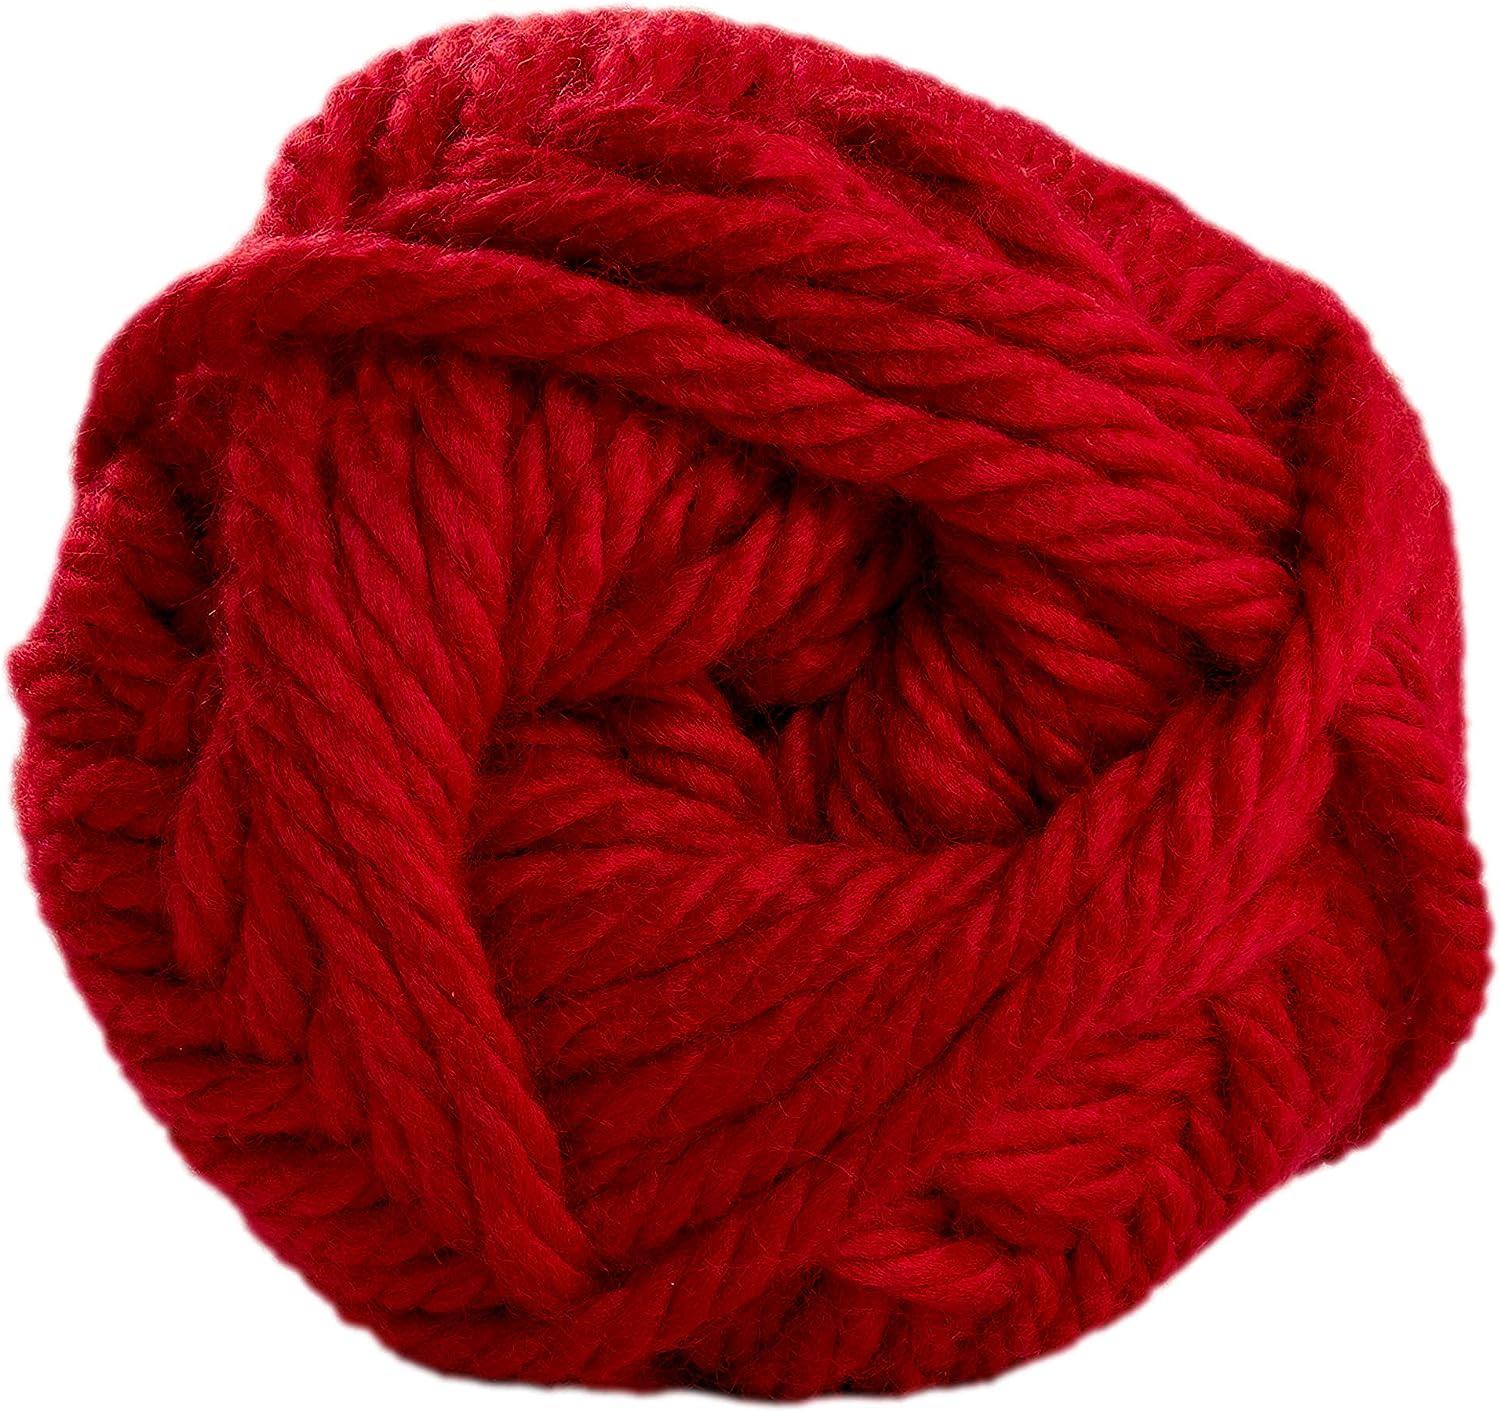 Lion Brand Yarn Hometown Yarn Bulky Yarn Yarn for Knitting and